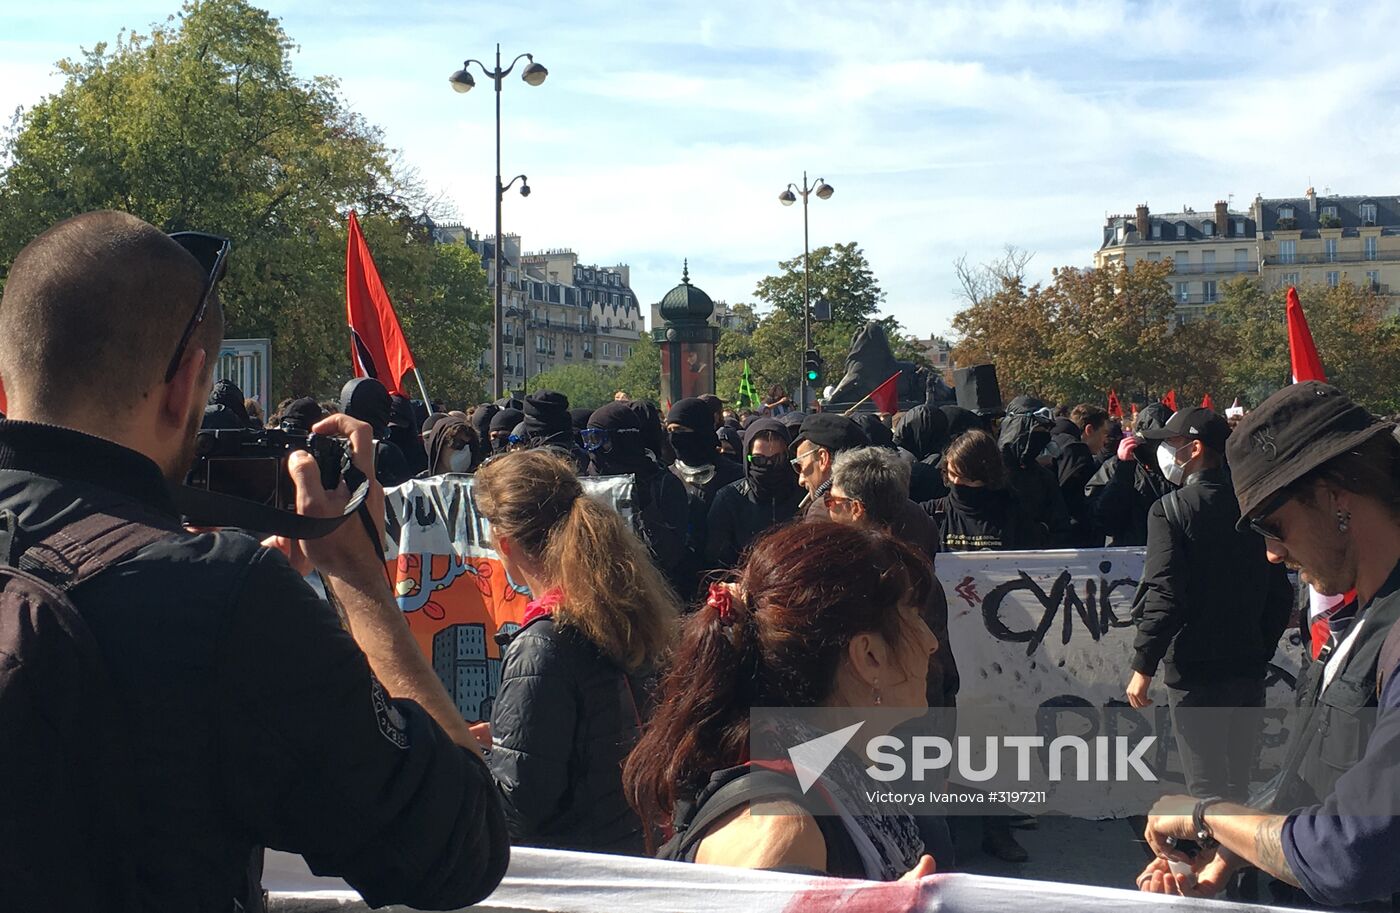 Protest against labor reform in Paris